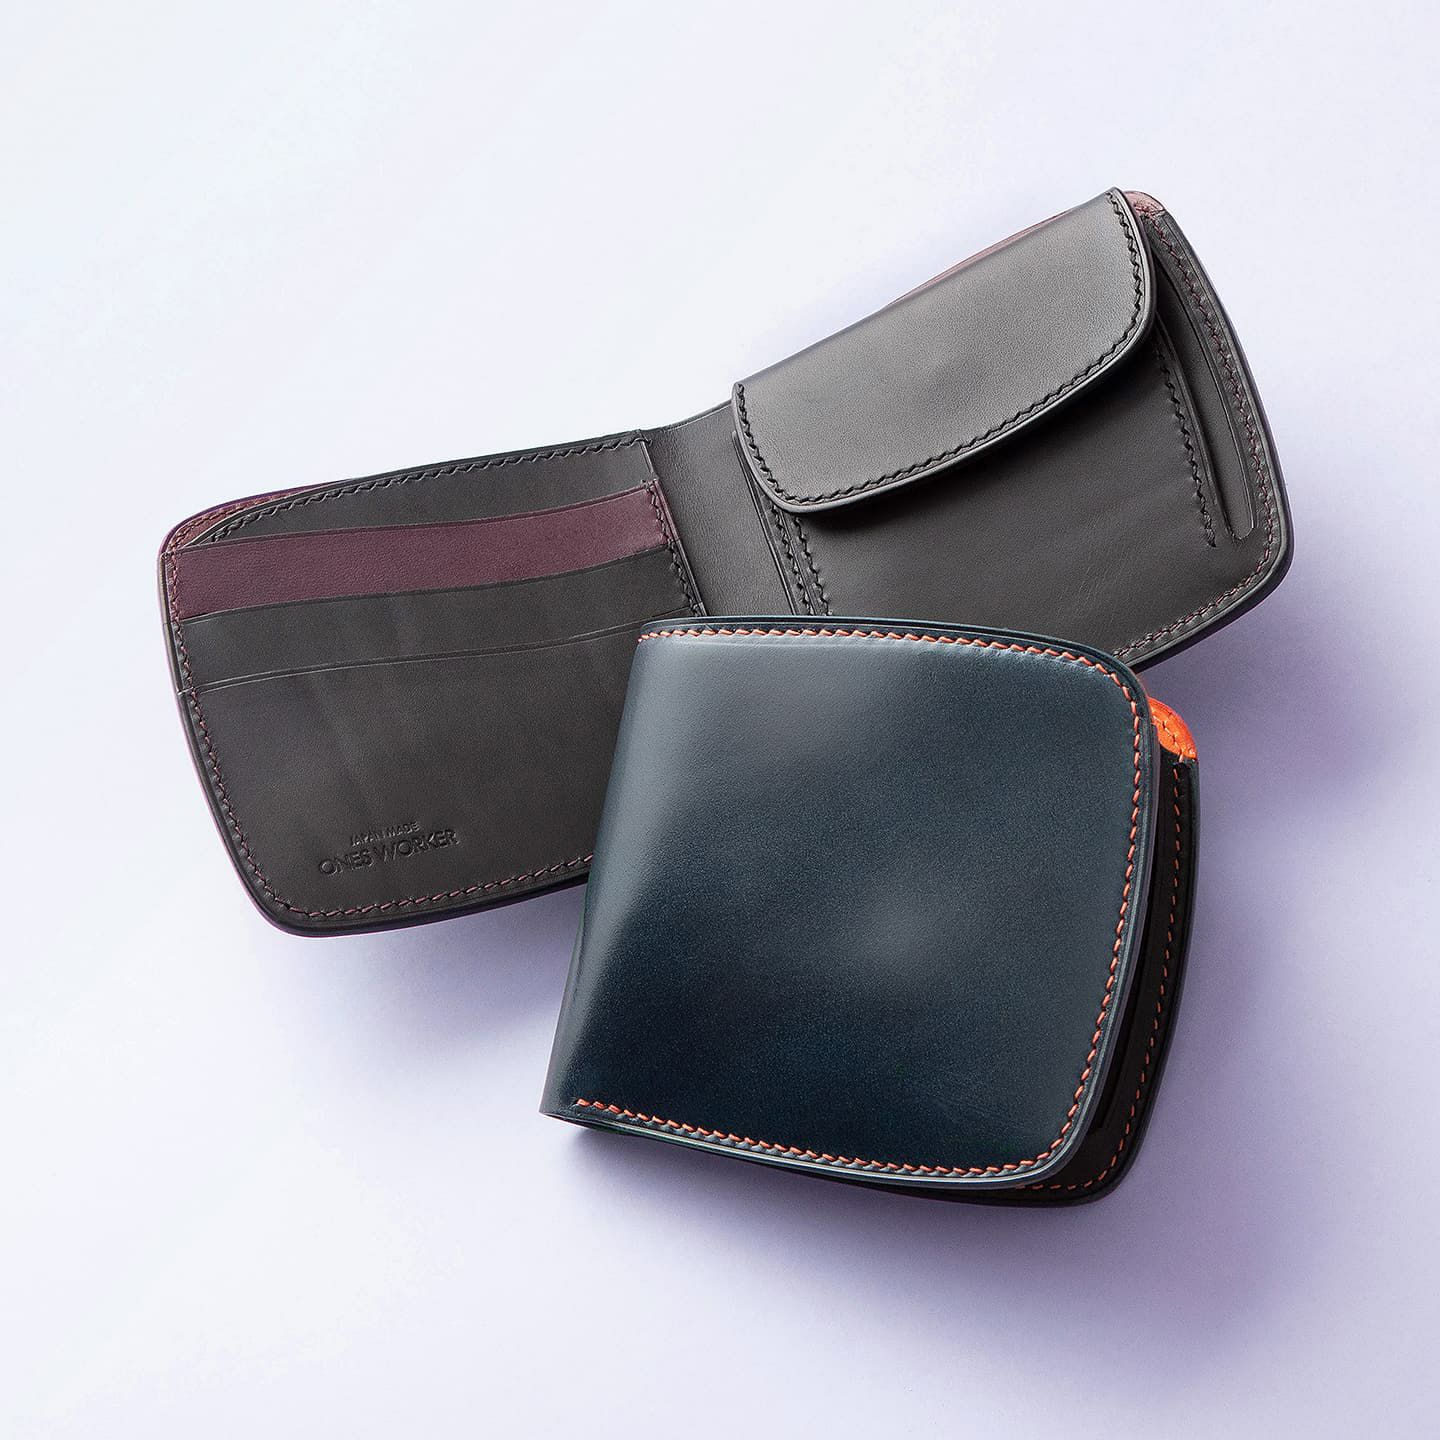 onesworker ワンズウォーカー コードバン 二つ折り財布カラーブラック